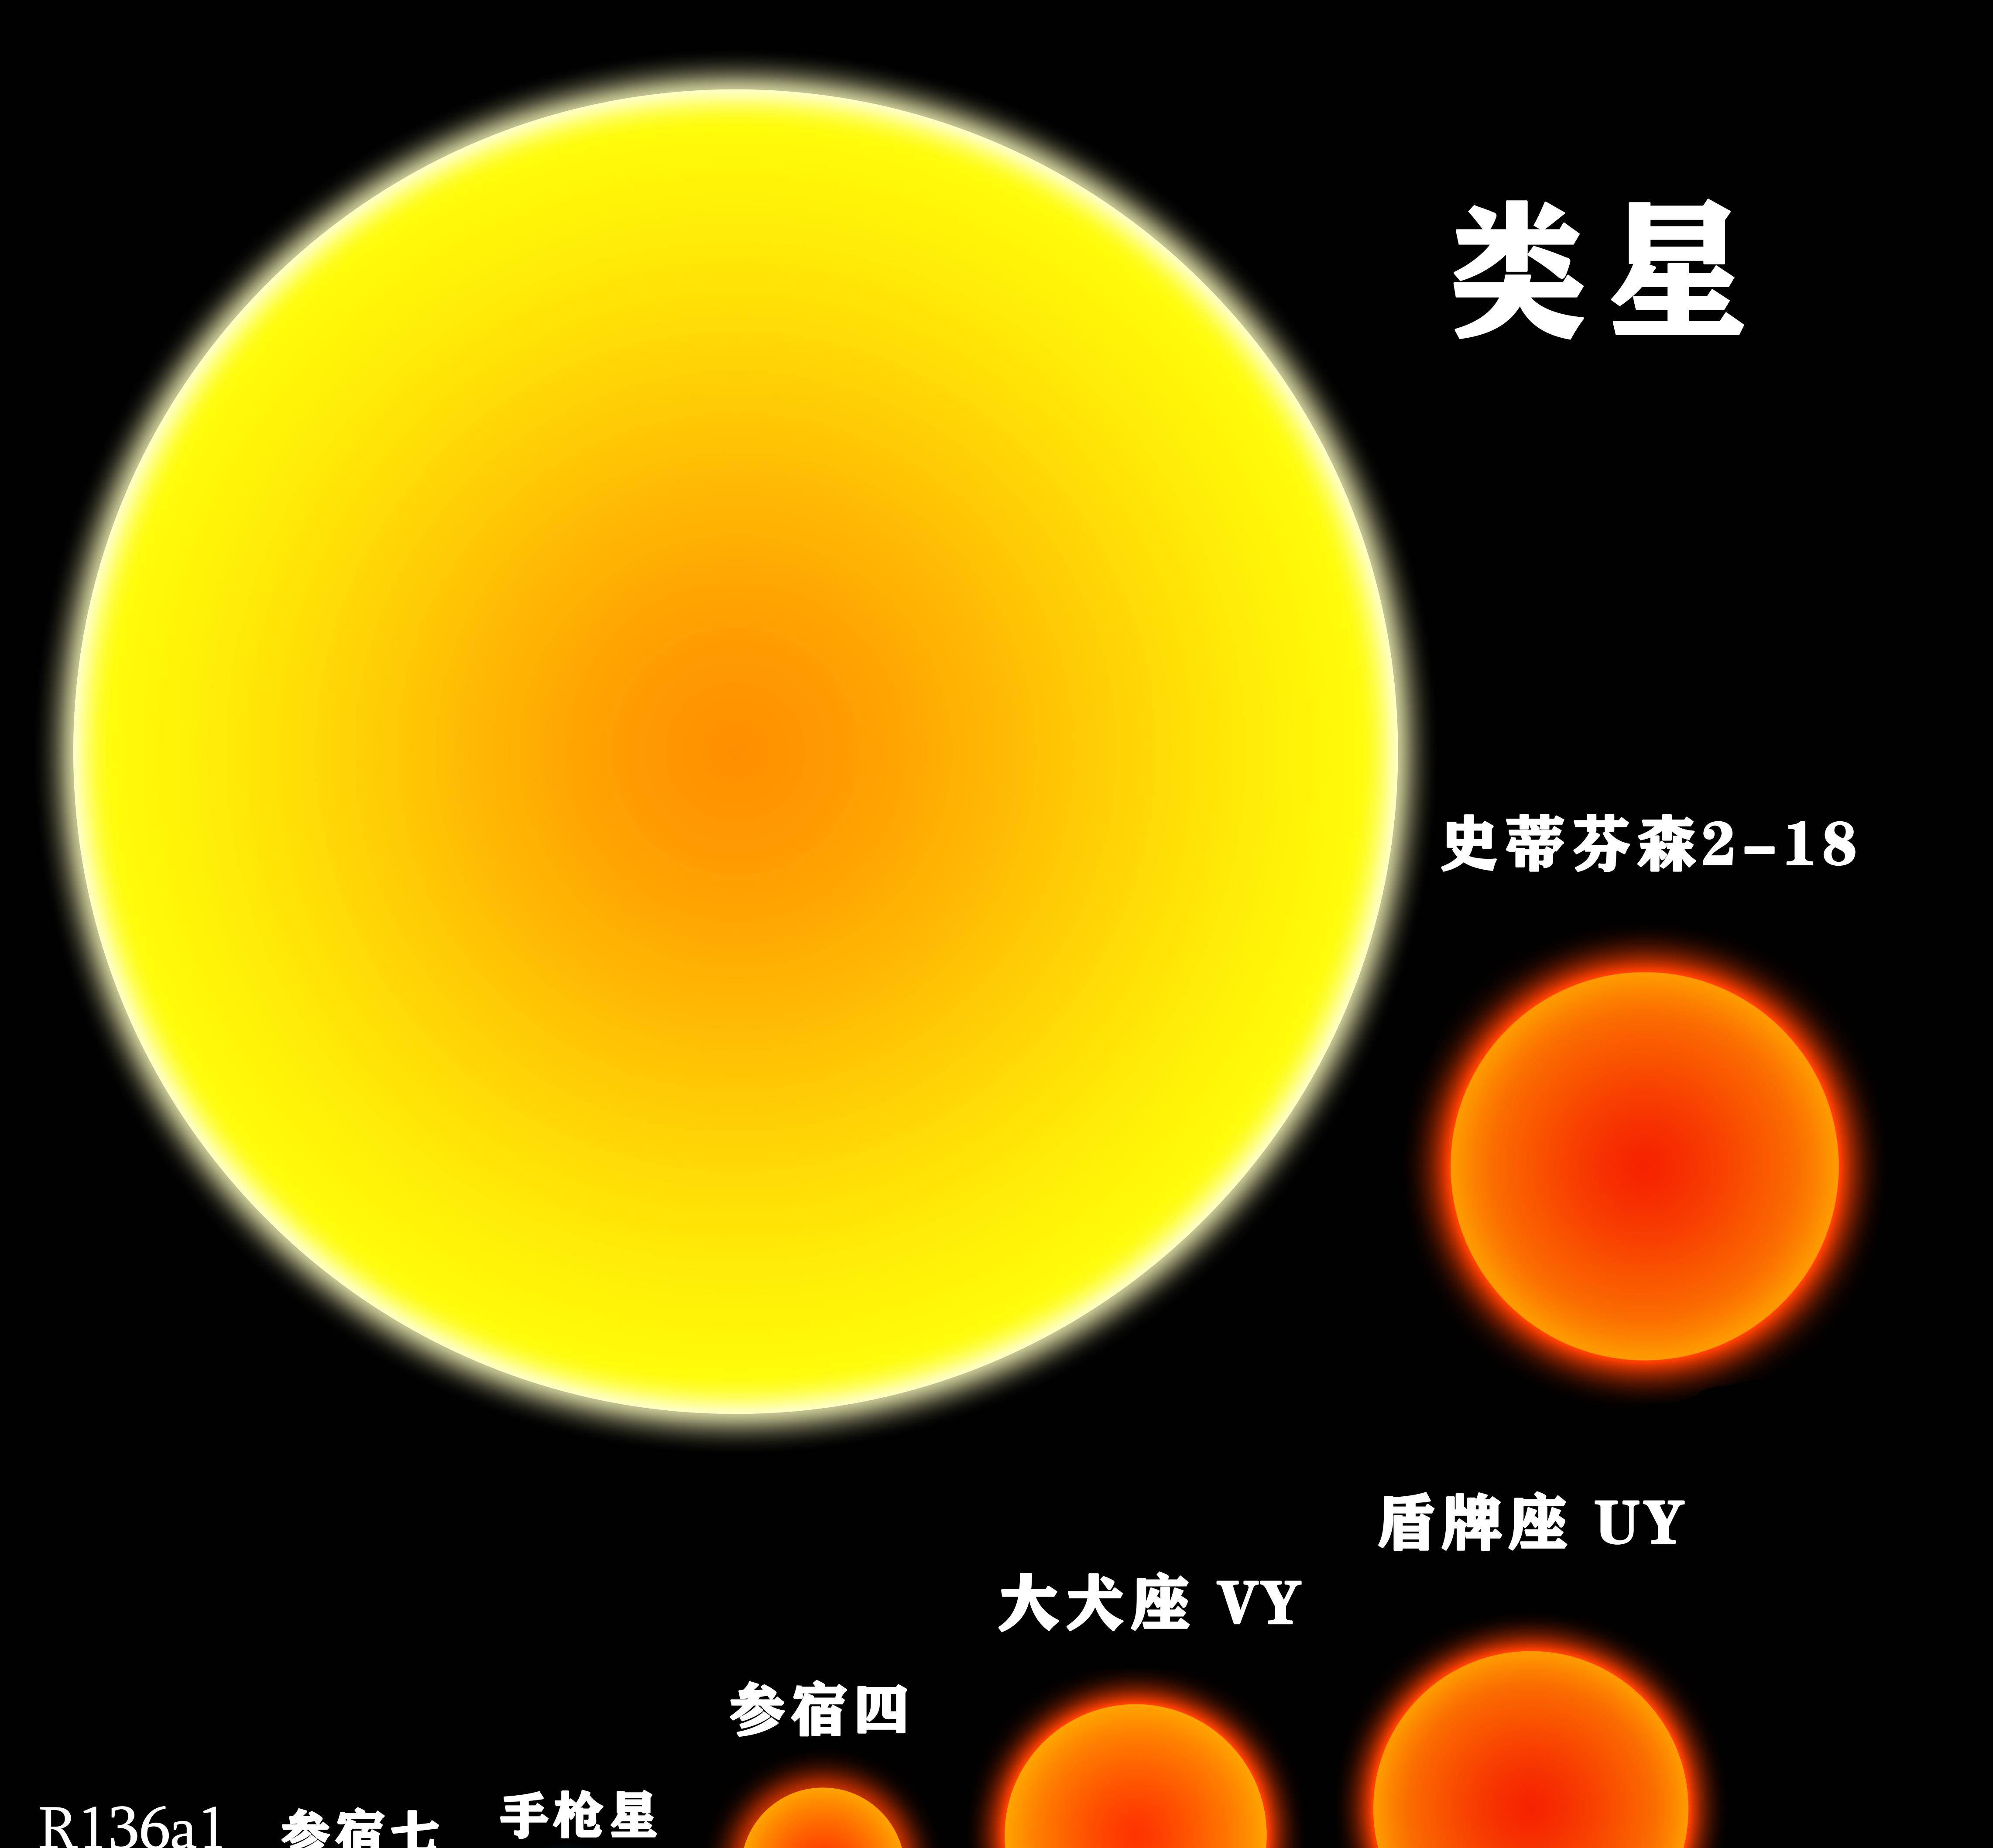 半径45亿公里,是太阳的7000倍,什么恒星有这么巨大?